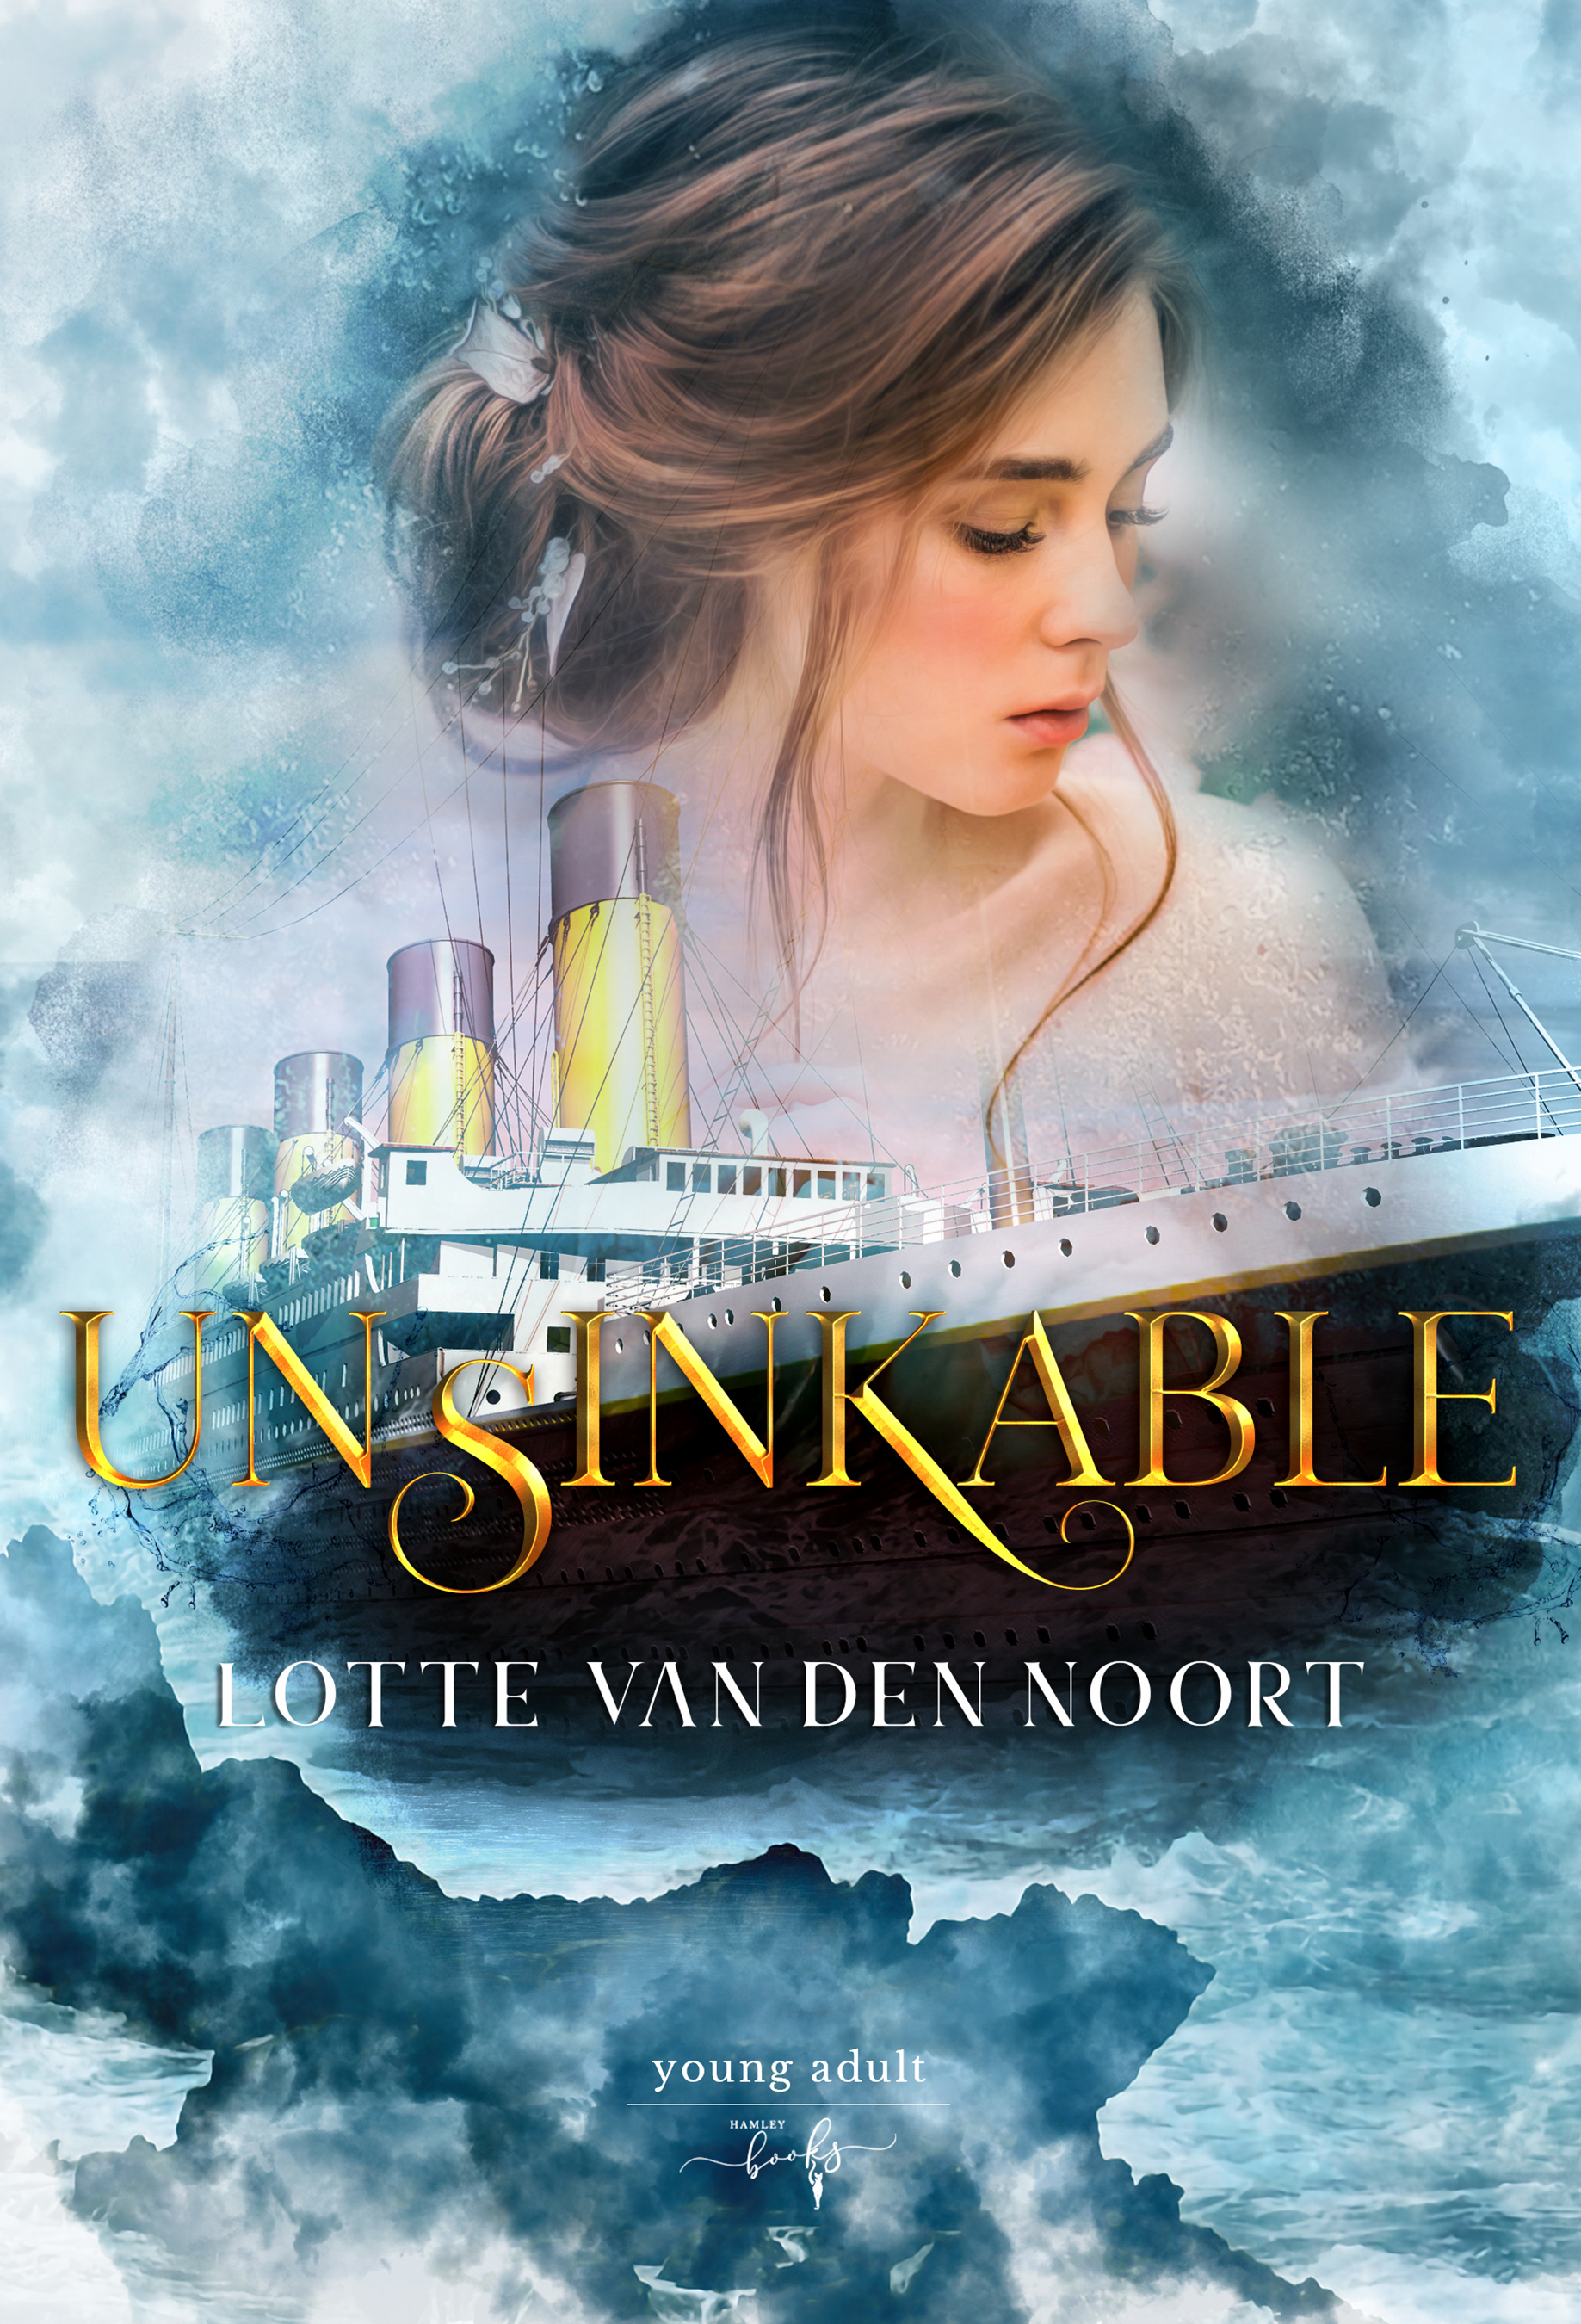 Unsinkable Lotte van den Noort Book Cover